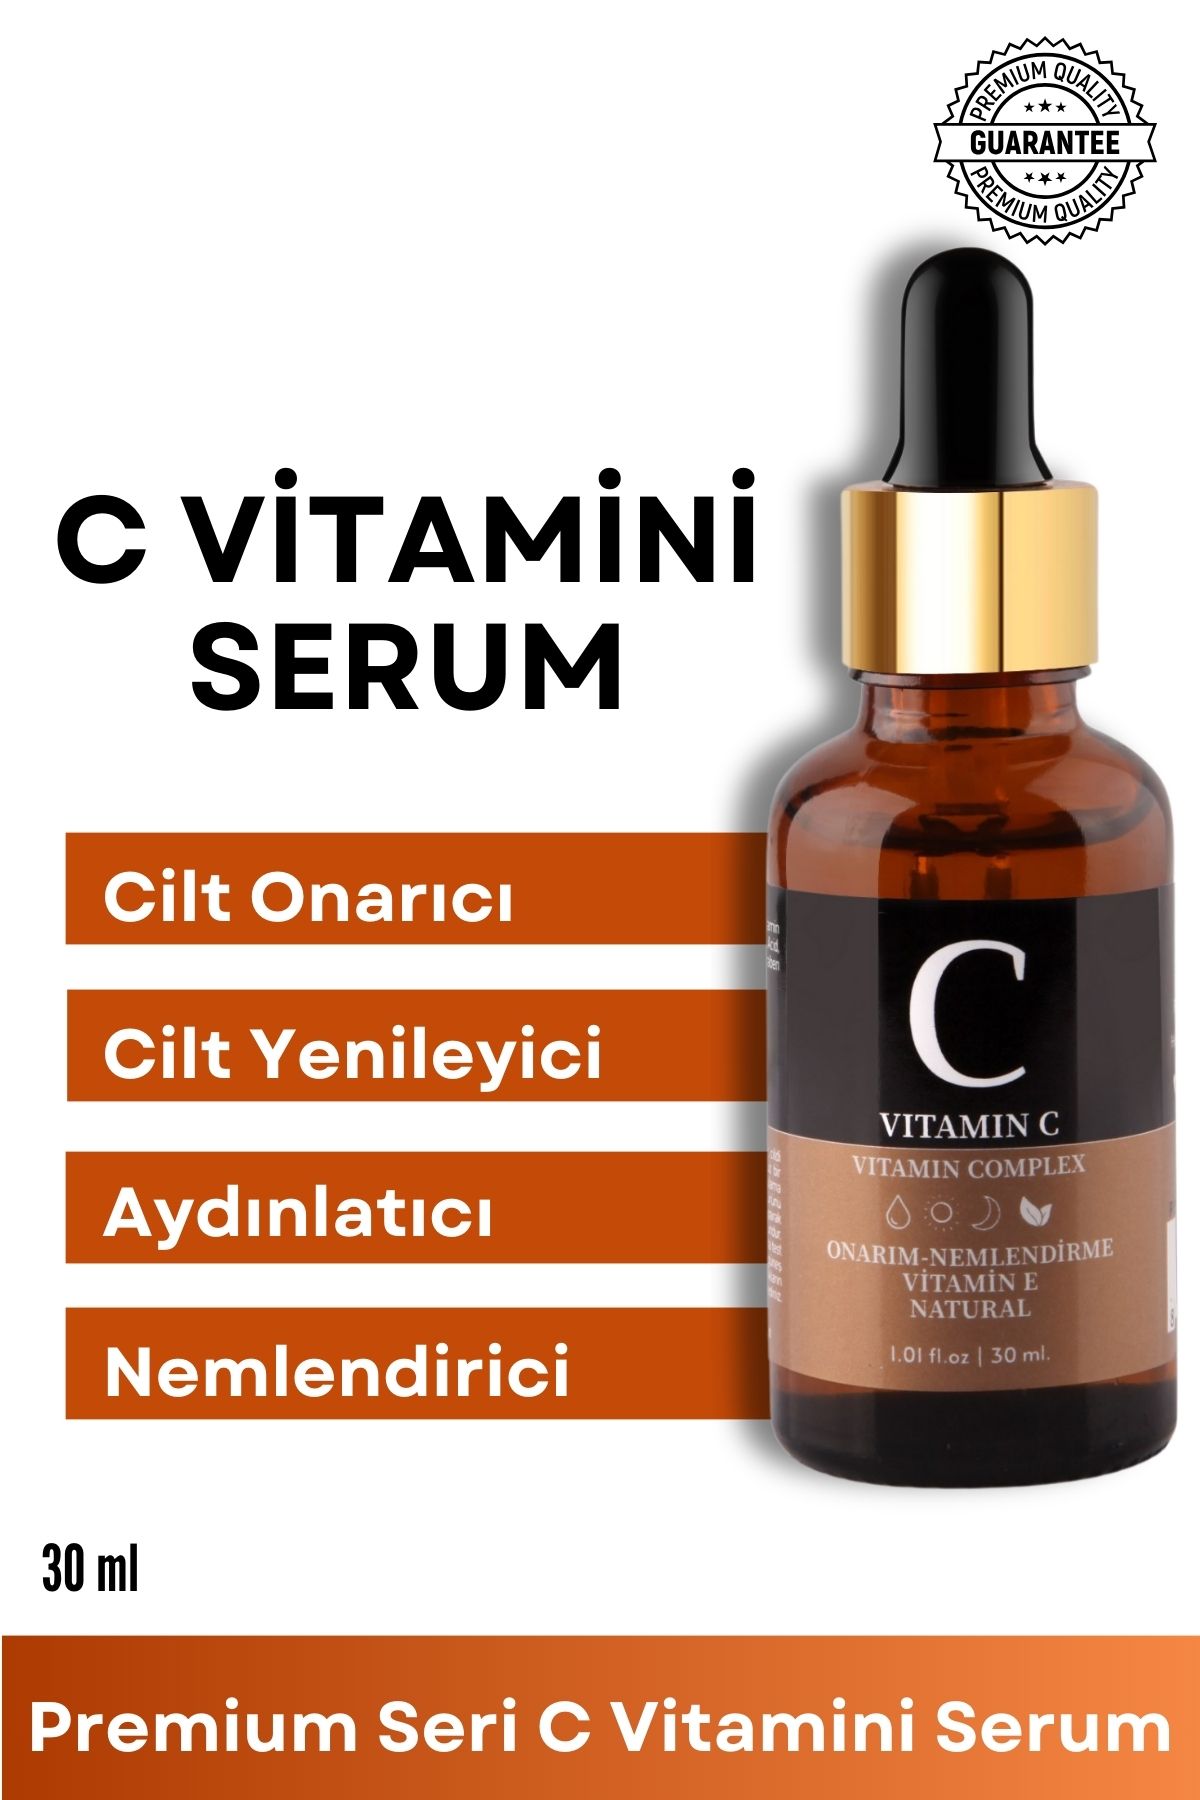 For You Gold C Vitamini Serum (HYALURONİK ASİT - AYDINLATICI SERUM) Yüz Bakım Serumu